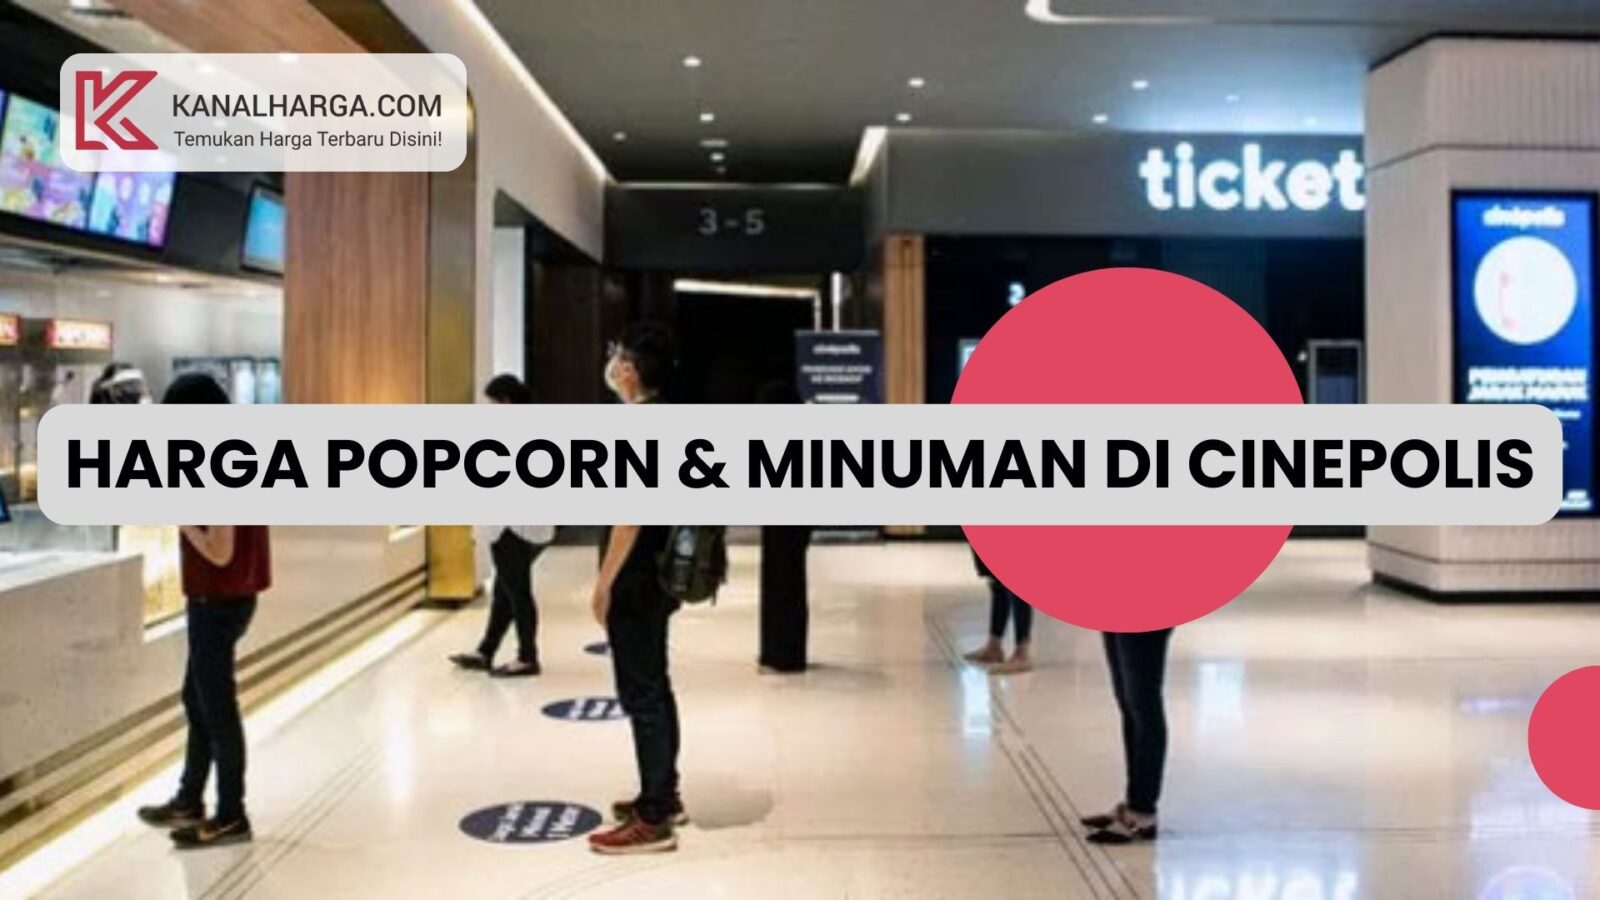 Harga Popcorn dan Minuman di Cinepolis Harga Popcorn dan Minuman di Cinepolis